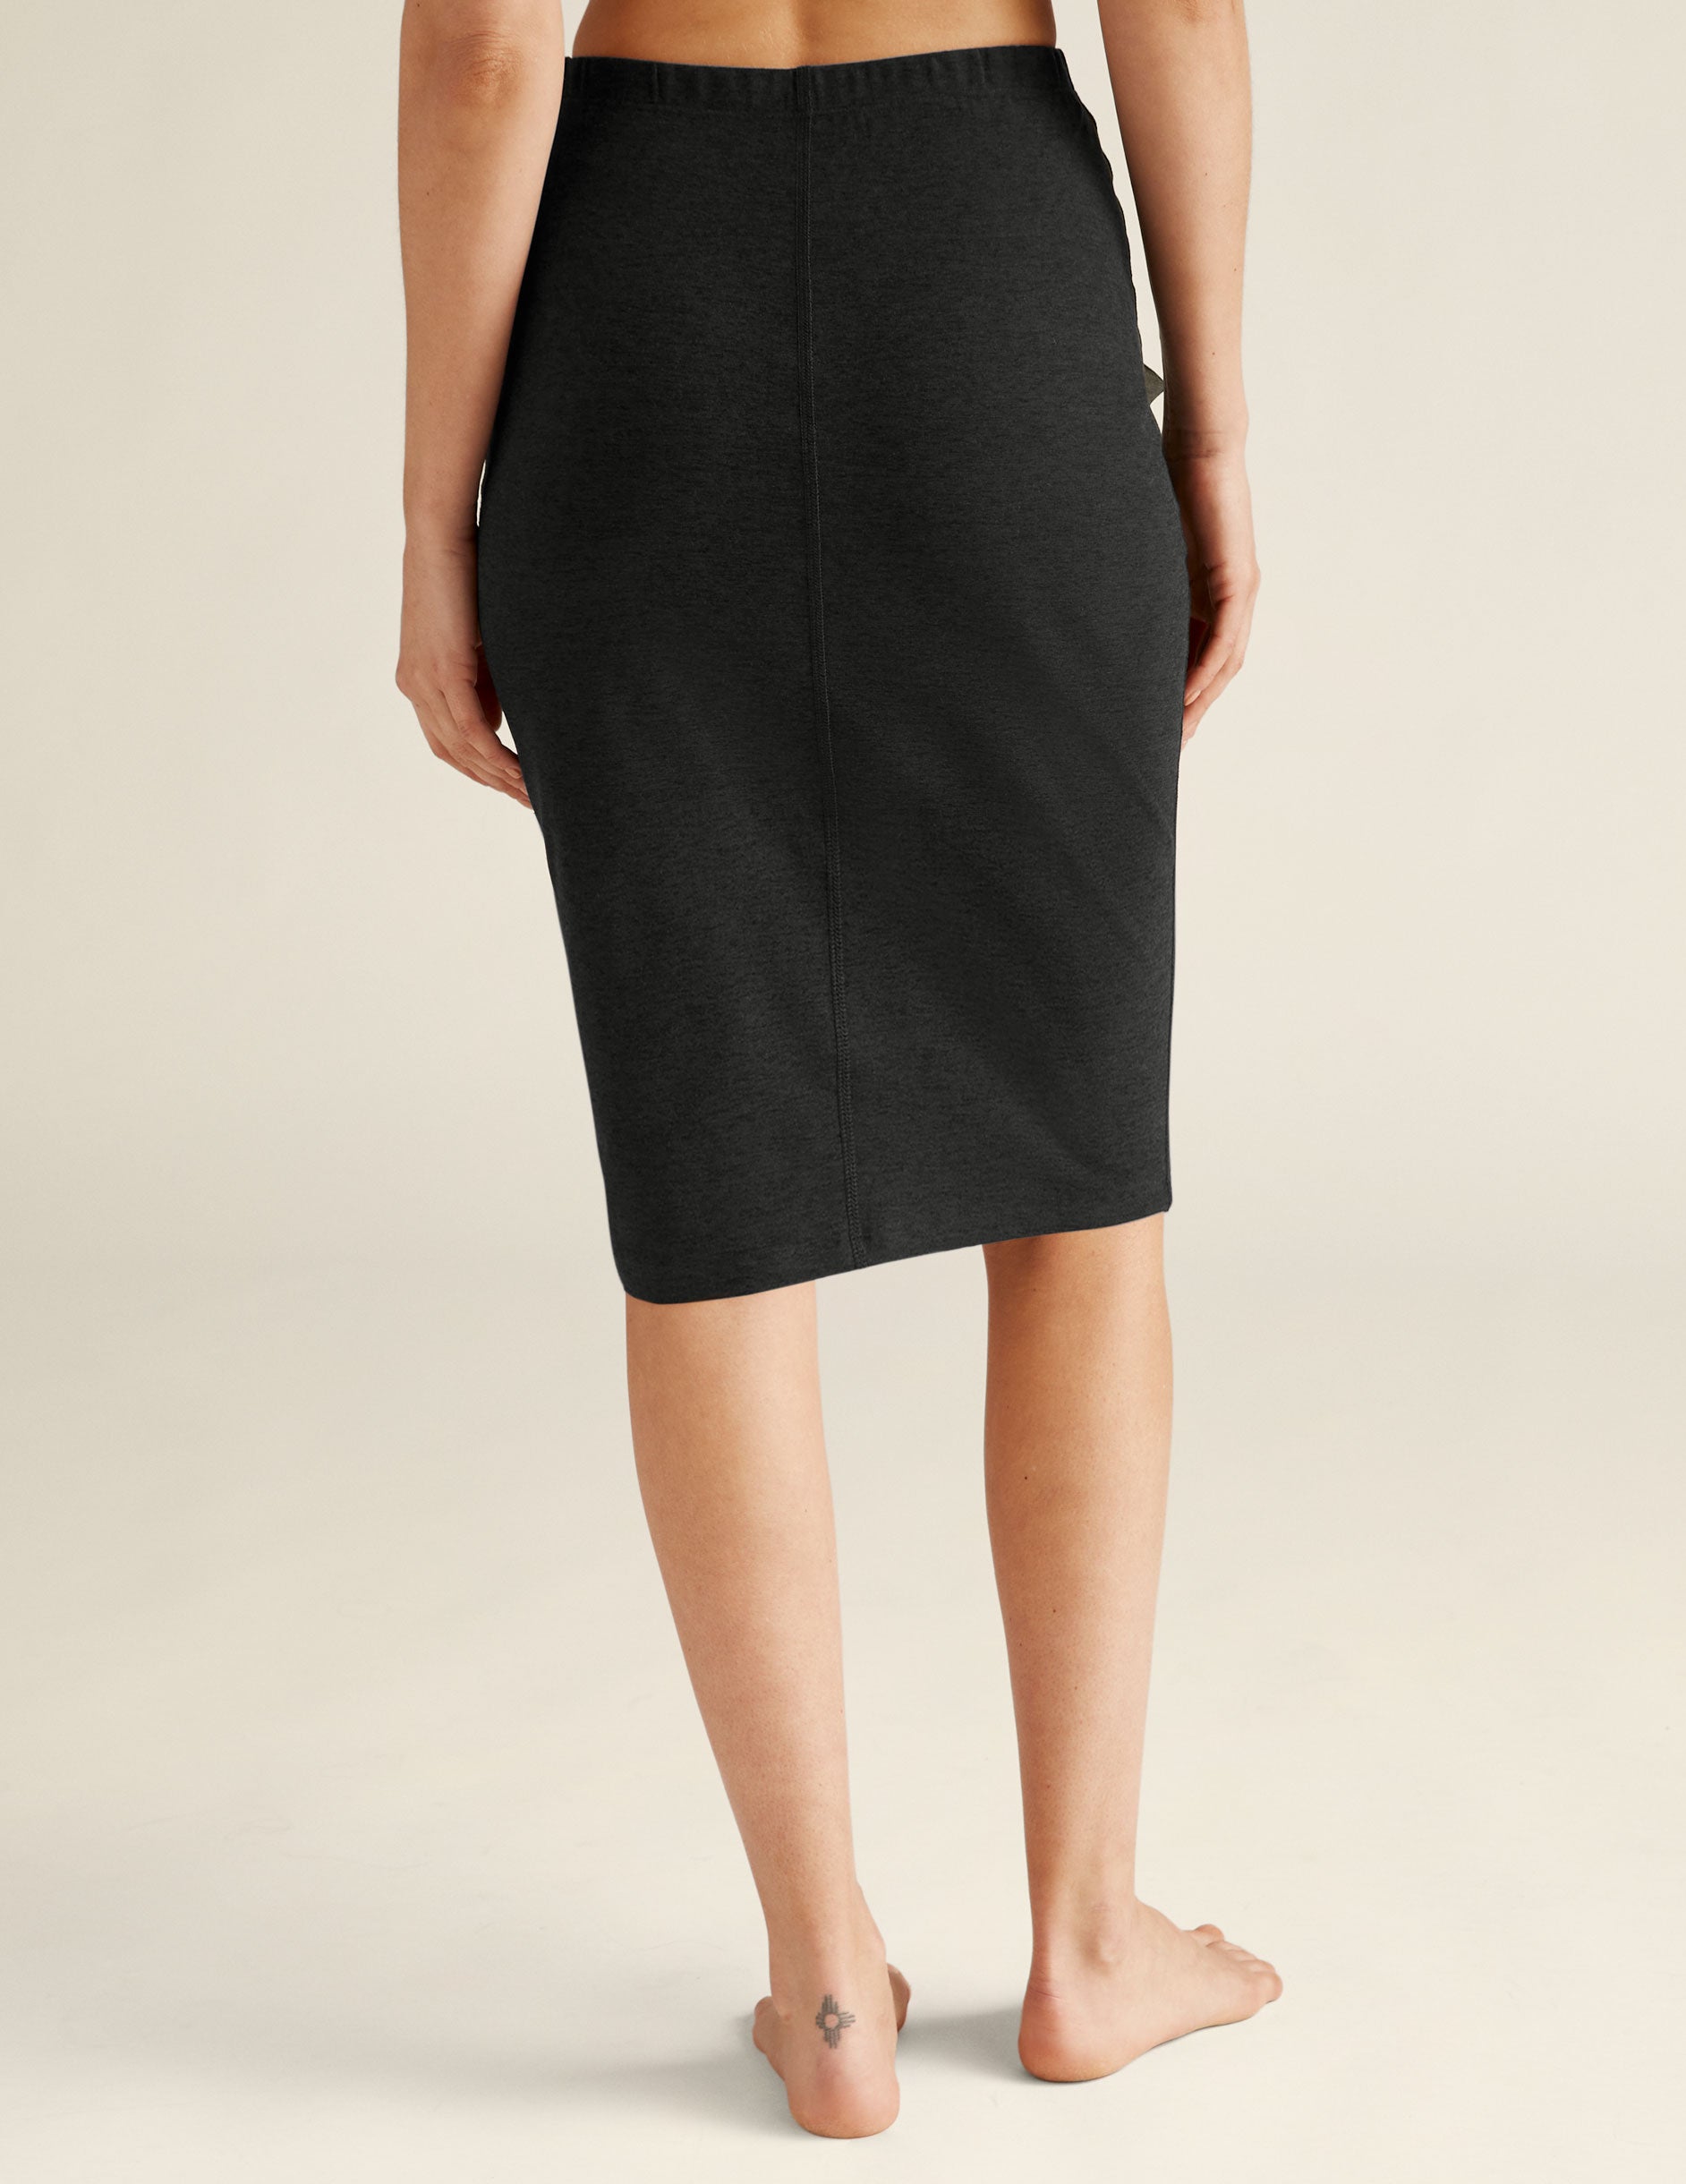 black midi length skirt. 